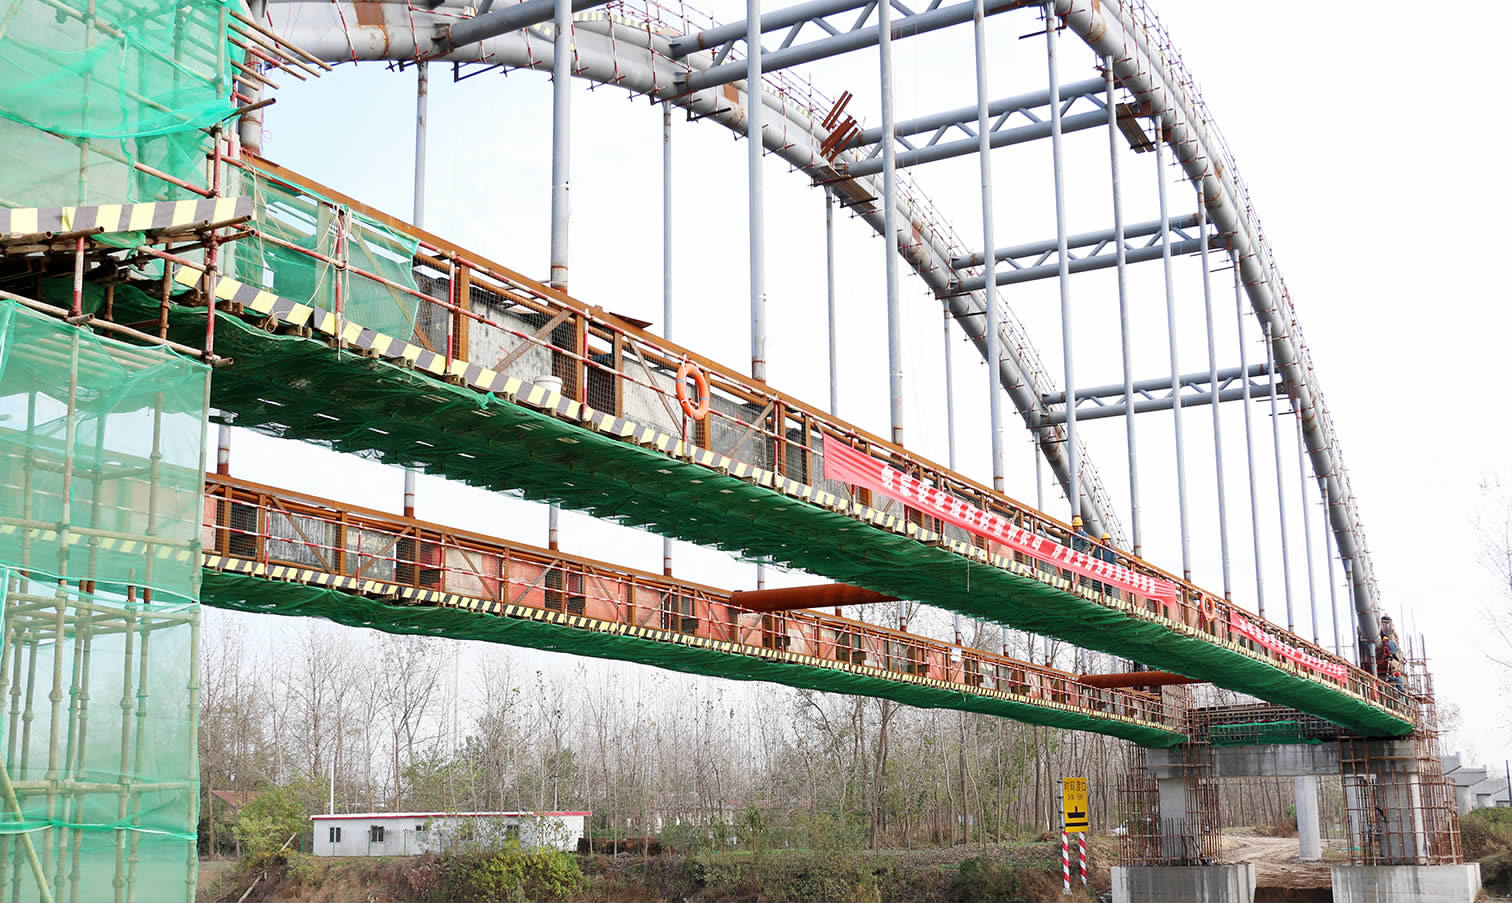 68米,宽10米,主跨为下承式钢管混凝土系杆拱桥,工程造价2750万元